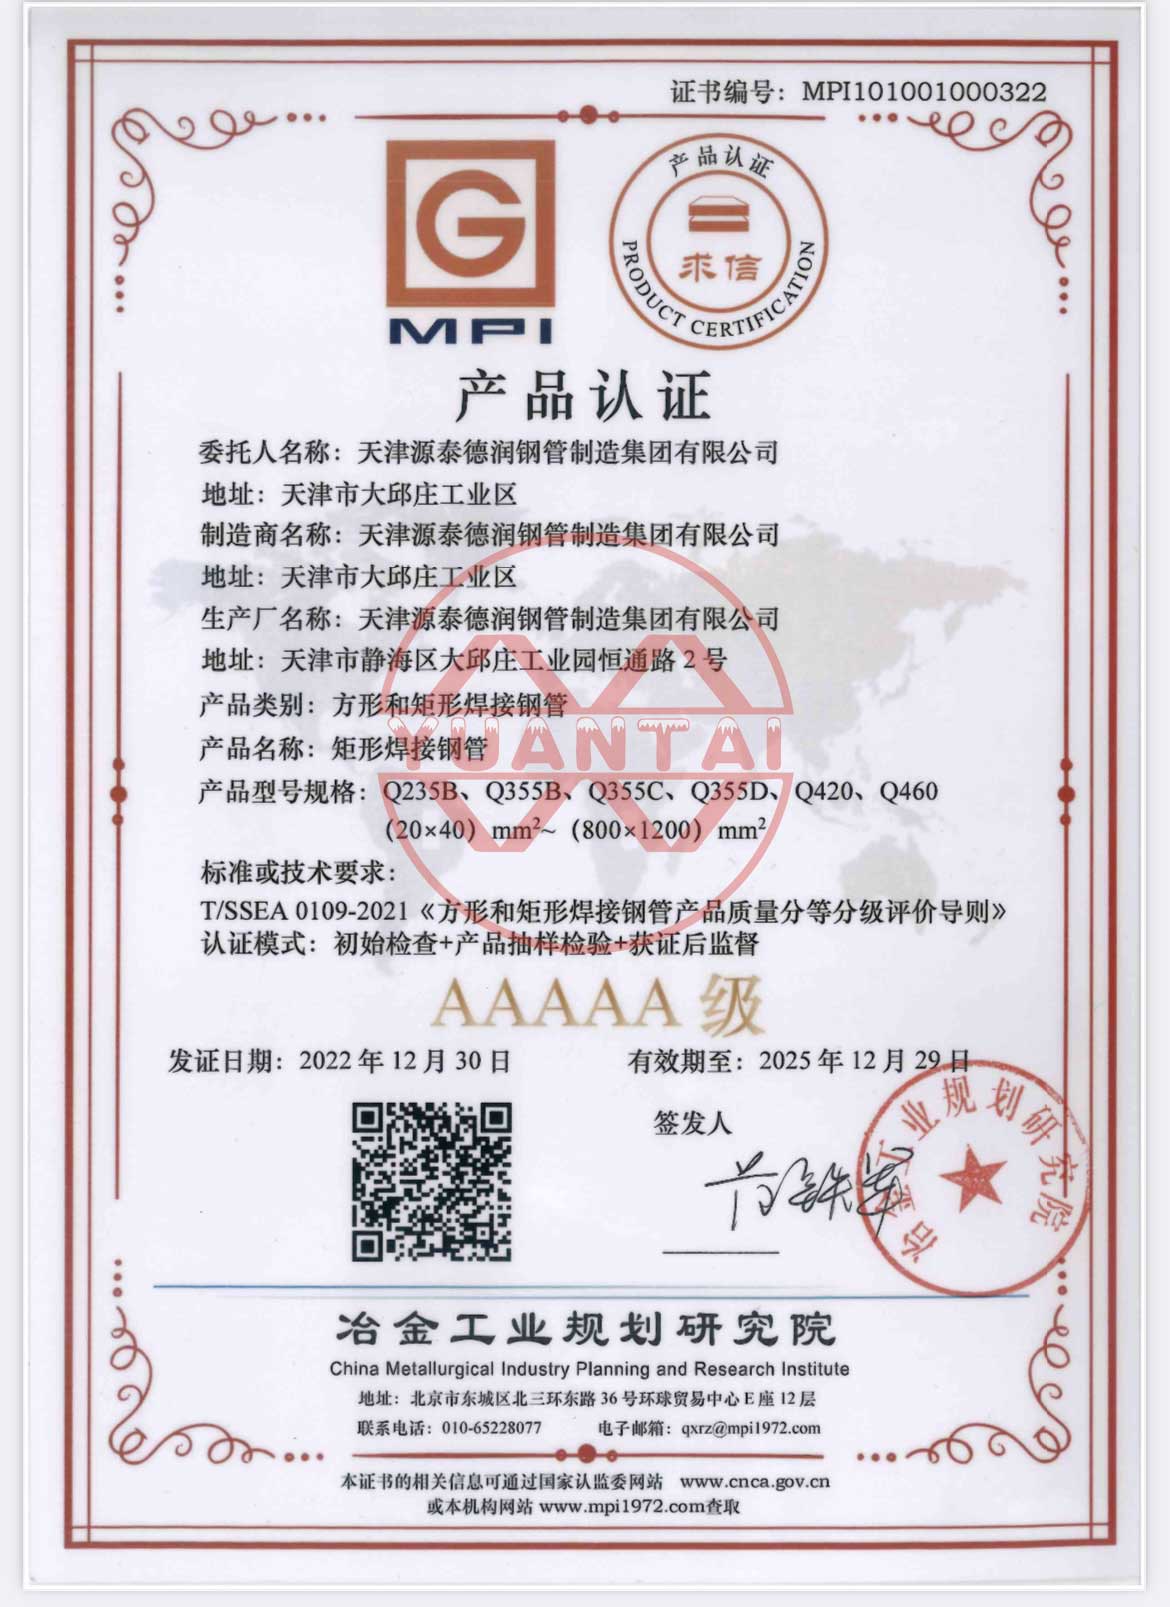 Tianjin-Yuantai-Delun-Groep se-vierkantige-en-reghoekige-gesweisde-staal-pype-is-toegeken-AAAA-produk-sertifisering-deur-die-Instituut-van-Metallurgiese-industrie-beplanning